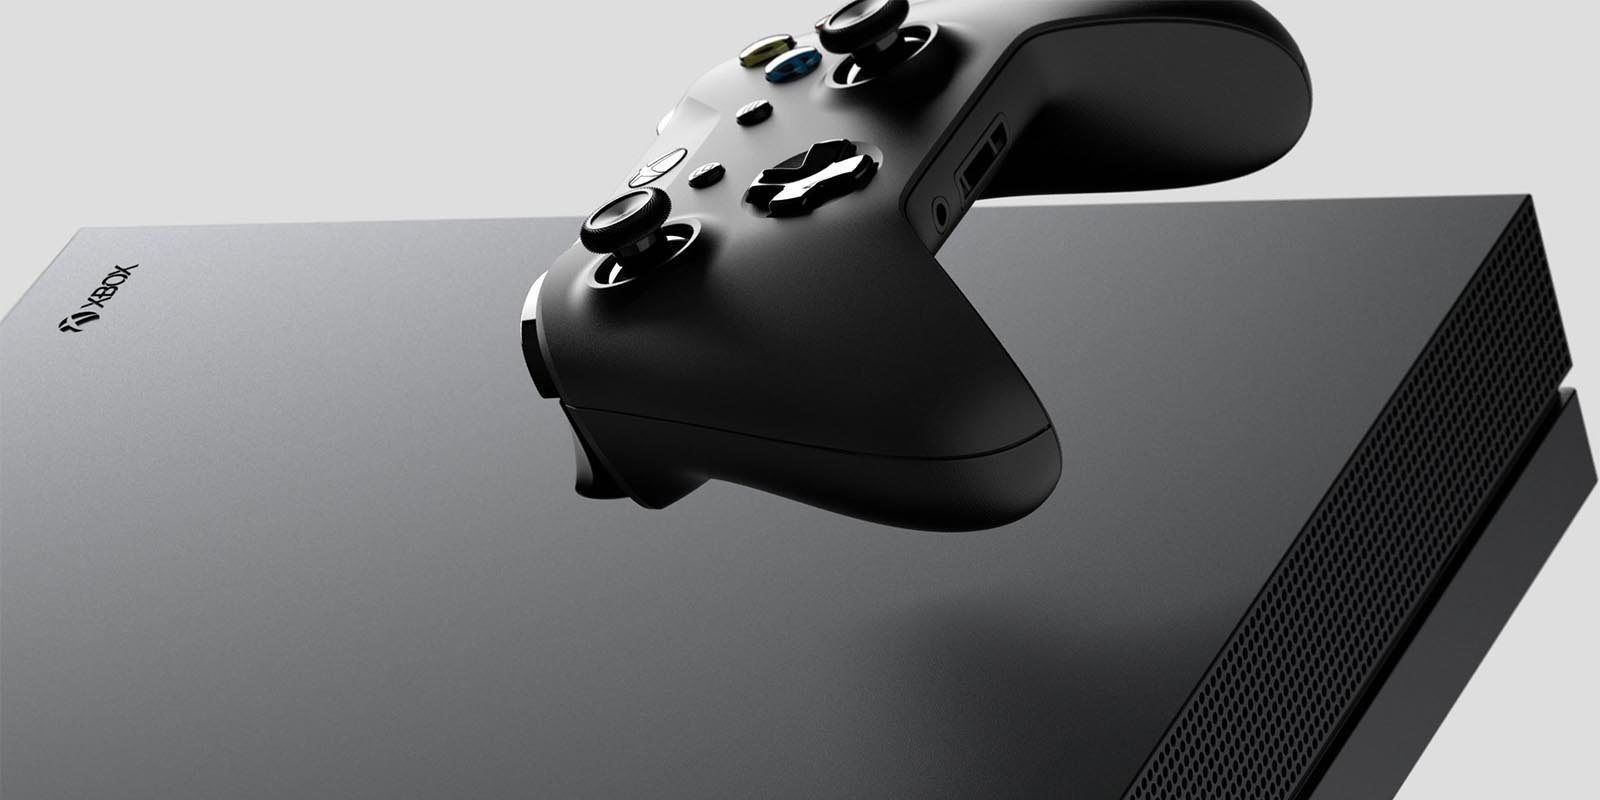 GAME anuncia un nuevo plan renove de Xbox One X